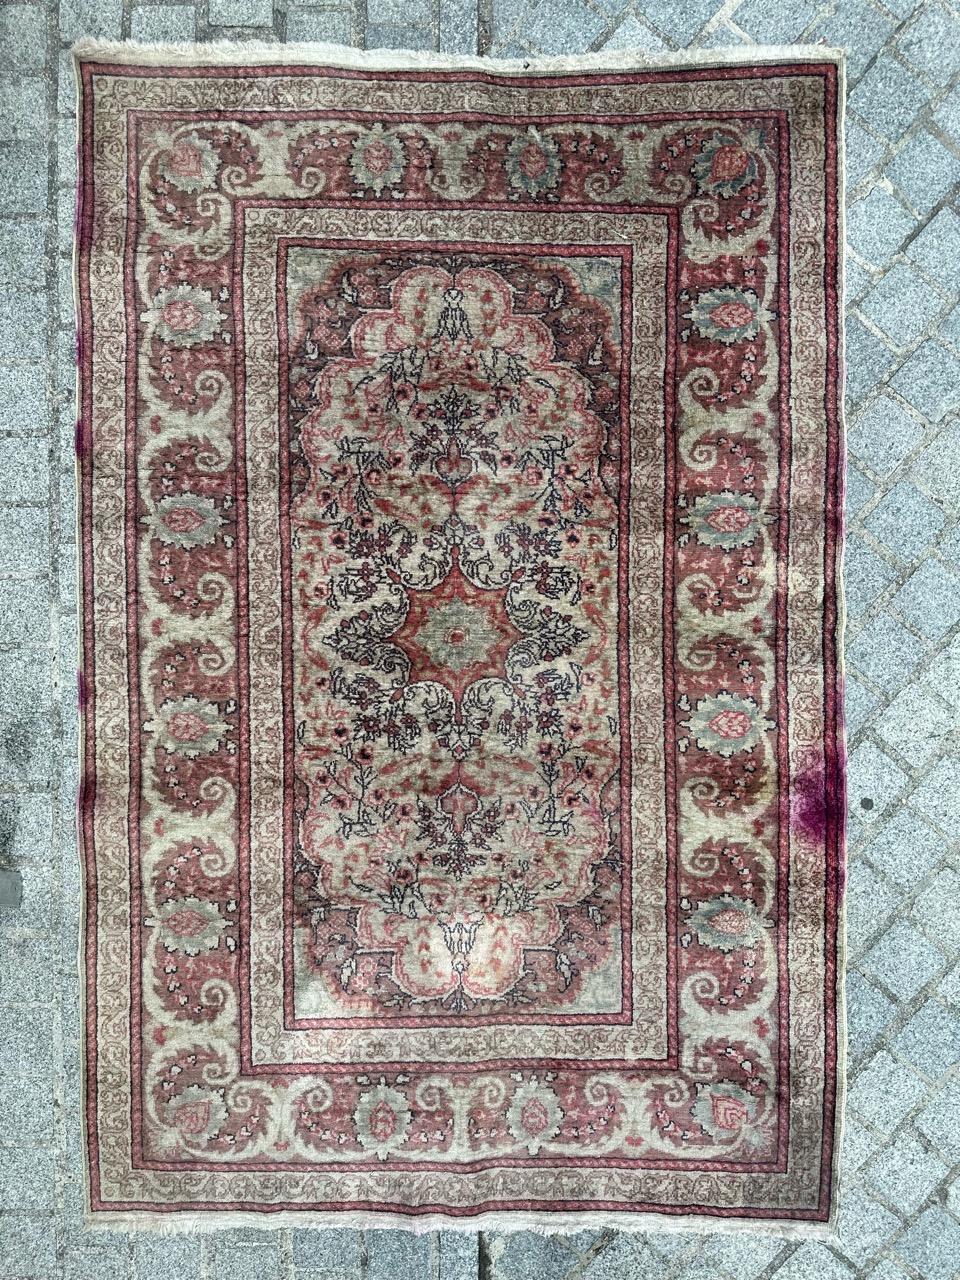 Schöner türkischer Kayseri-Teppich aus der Mitte des 20. Jahrhunderts, sorgfältig handgeknüpft mit einer Mischung aus Wolle und Baumwolle auf einem Baumwollgrund. Dieses exquisite Stück zeigt ein zentrales Medaillon mit floralen Motiven, ein